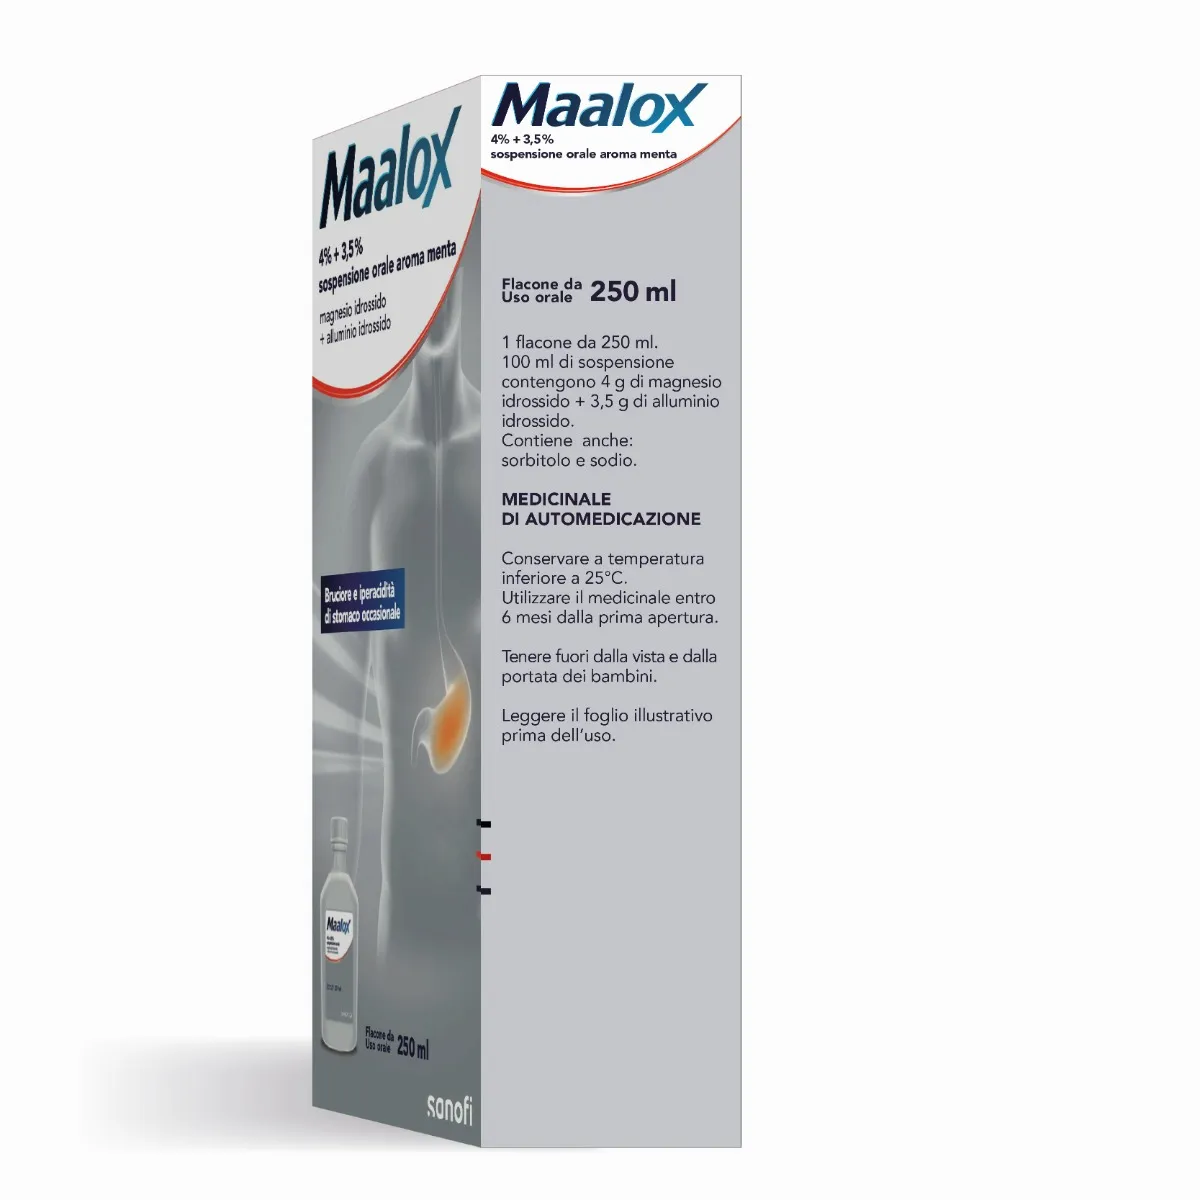 Maalox Sospensione Orale Aroma Menta 250 ml Antiacido